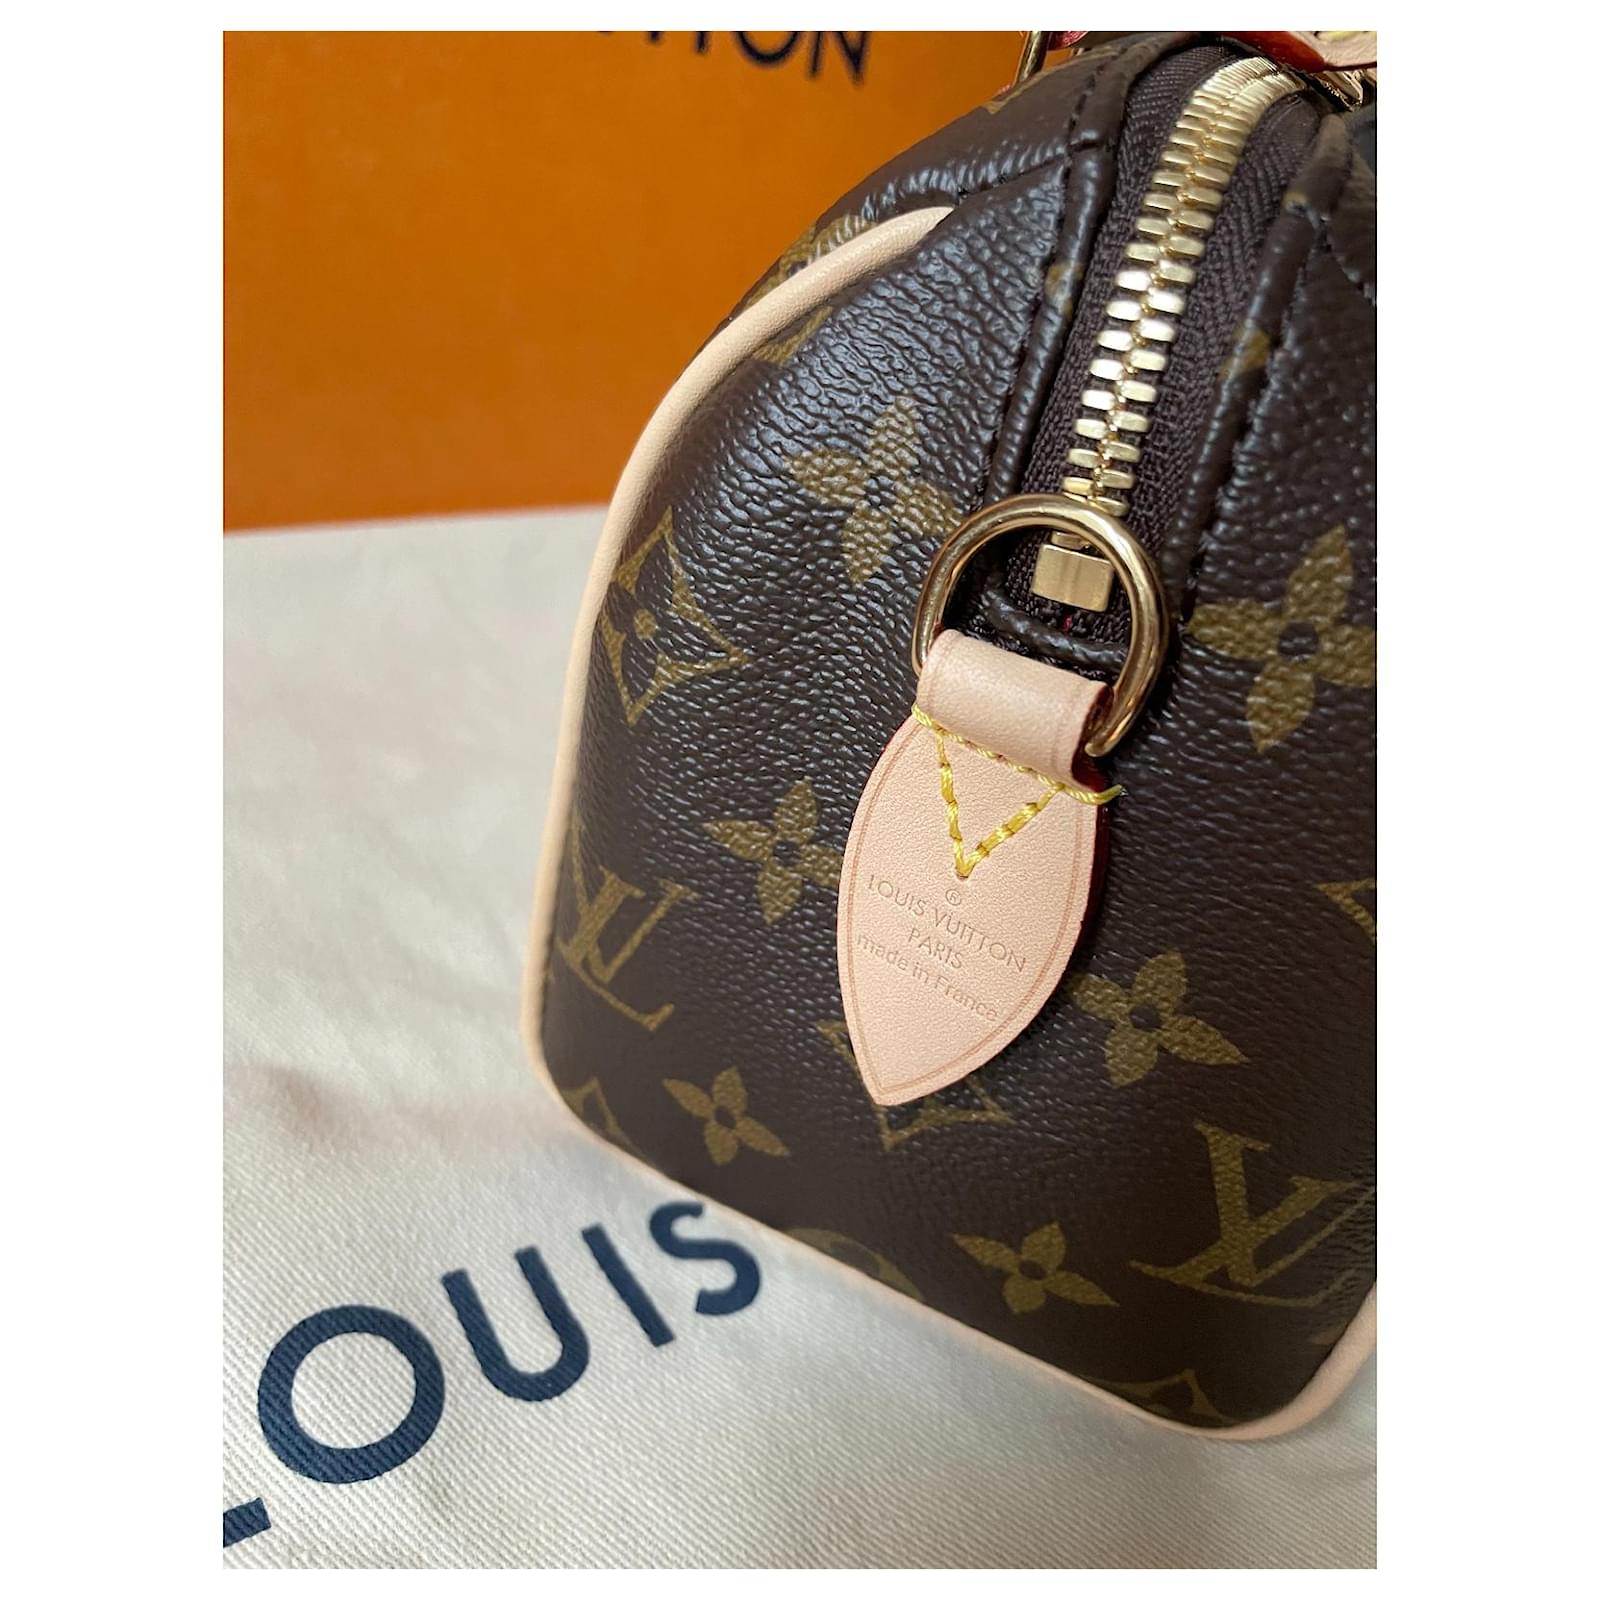 Louis Vuitton NÉONOÉ MM - sold out in stores